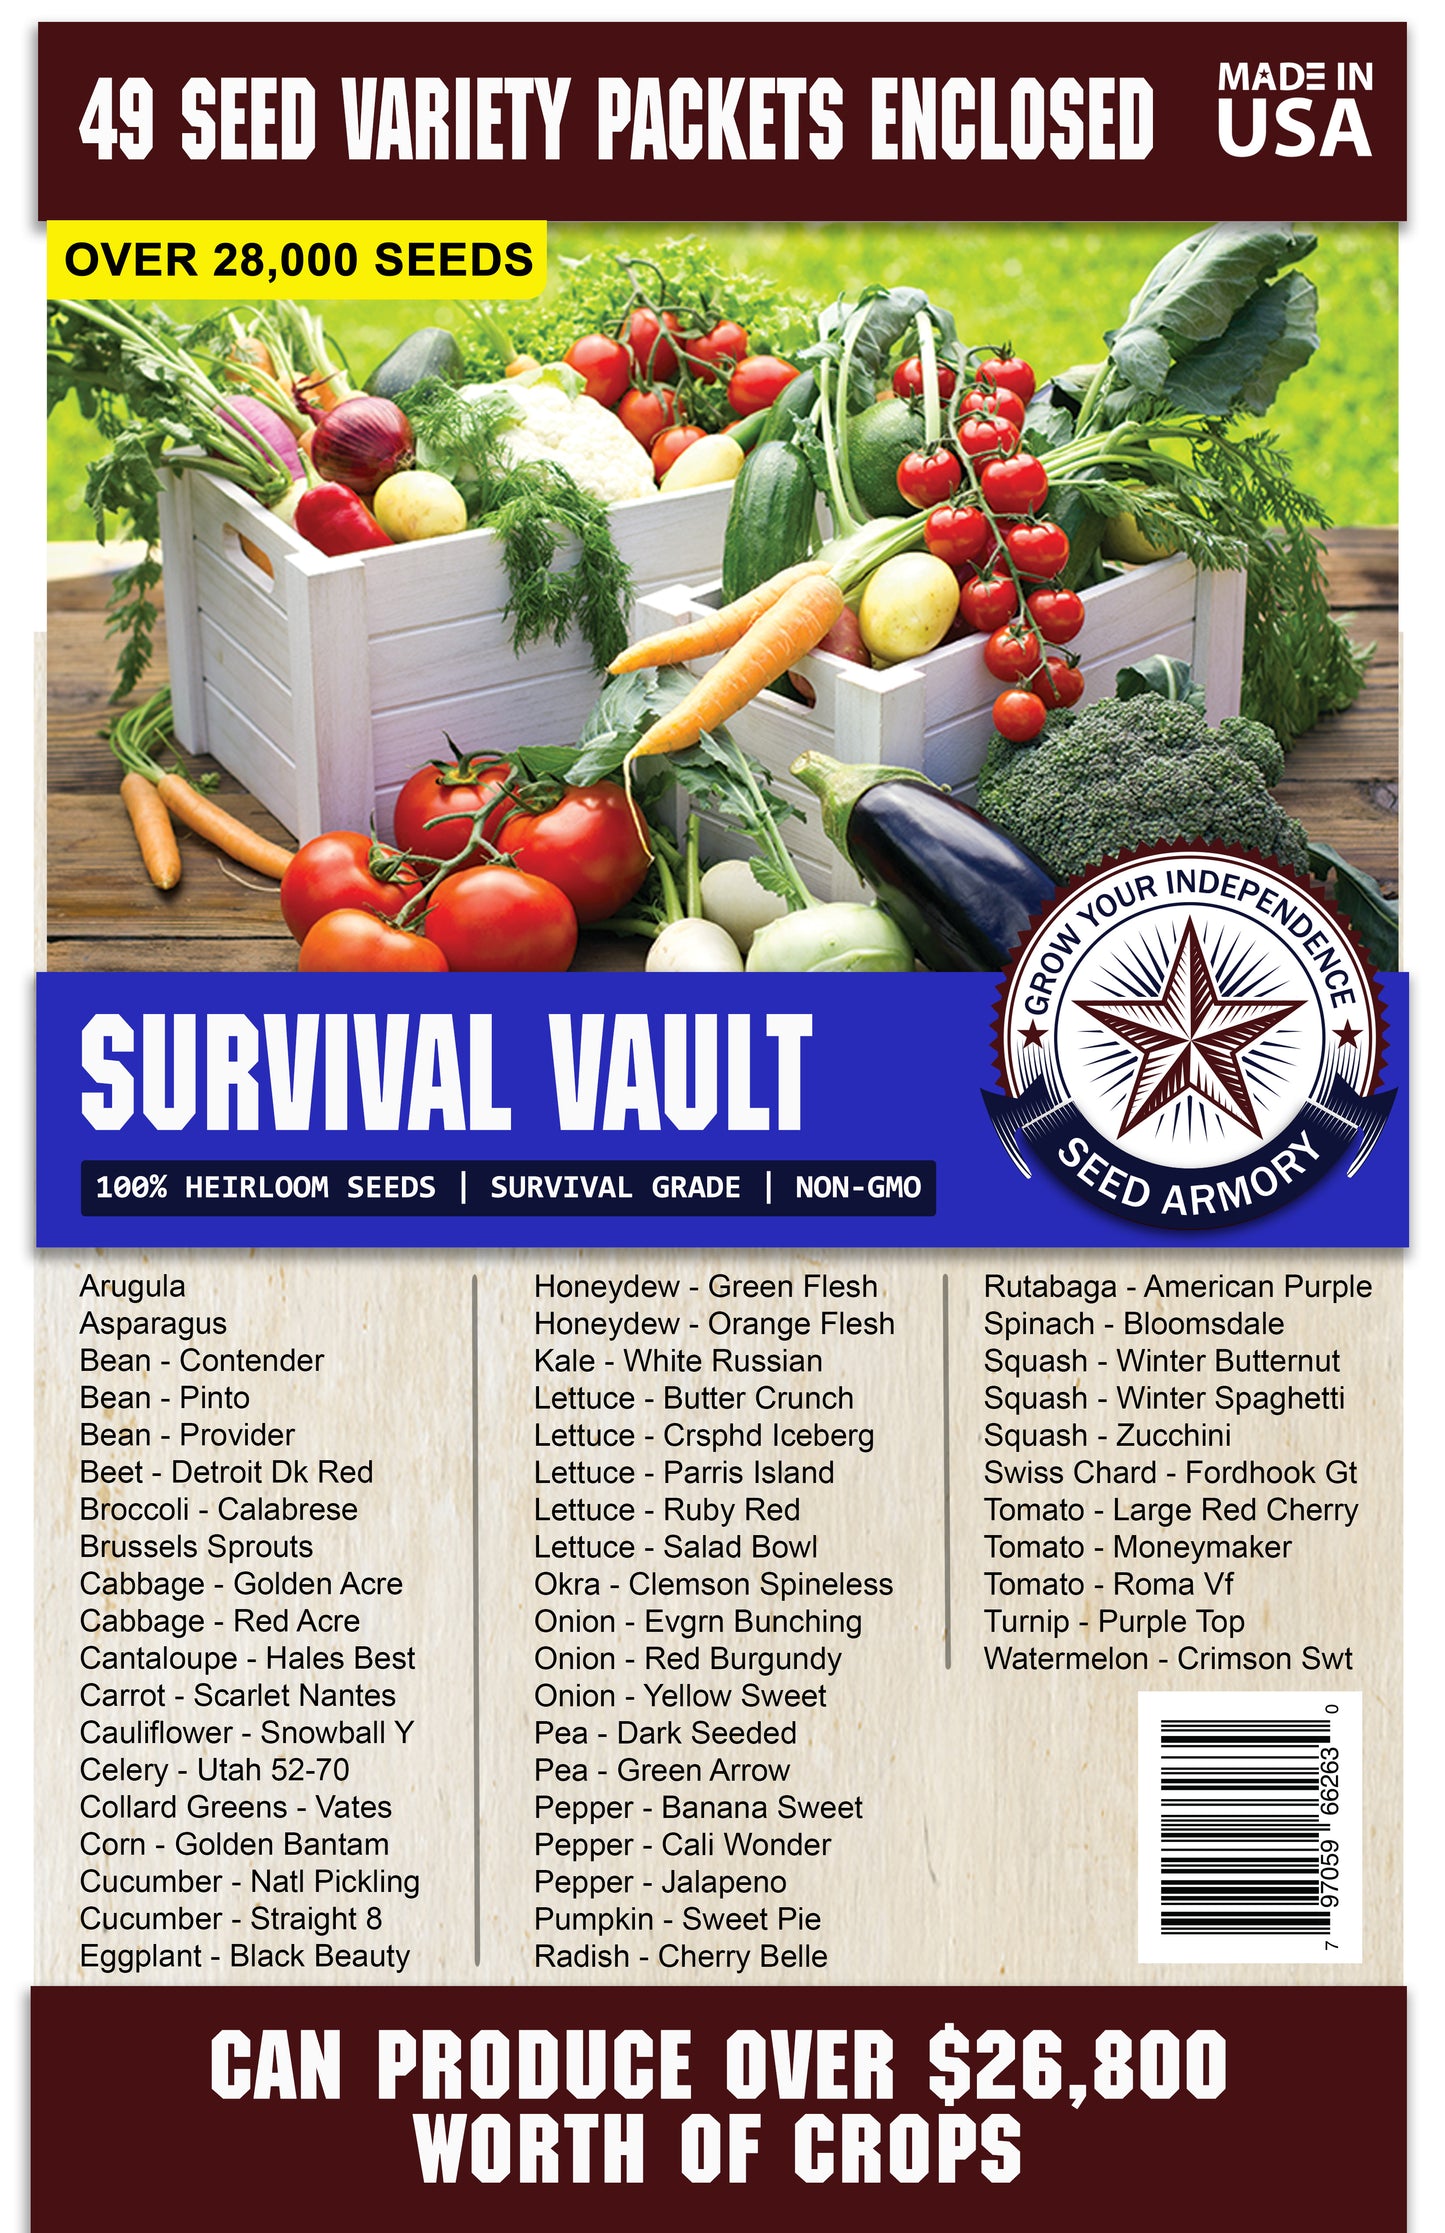 Survival Vault - 49 Varieties